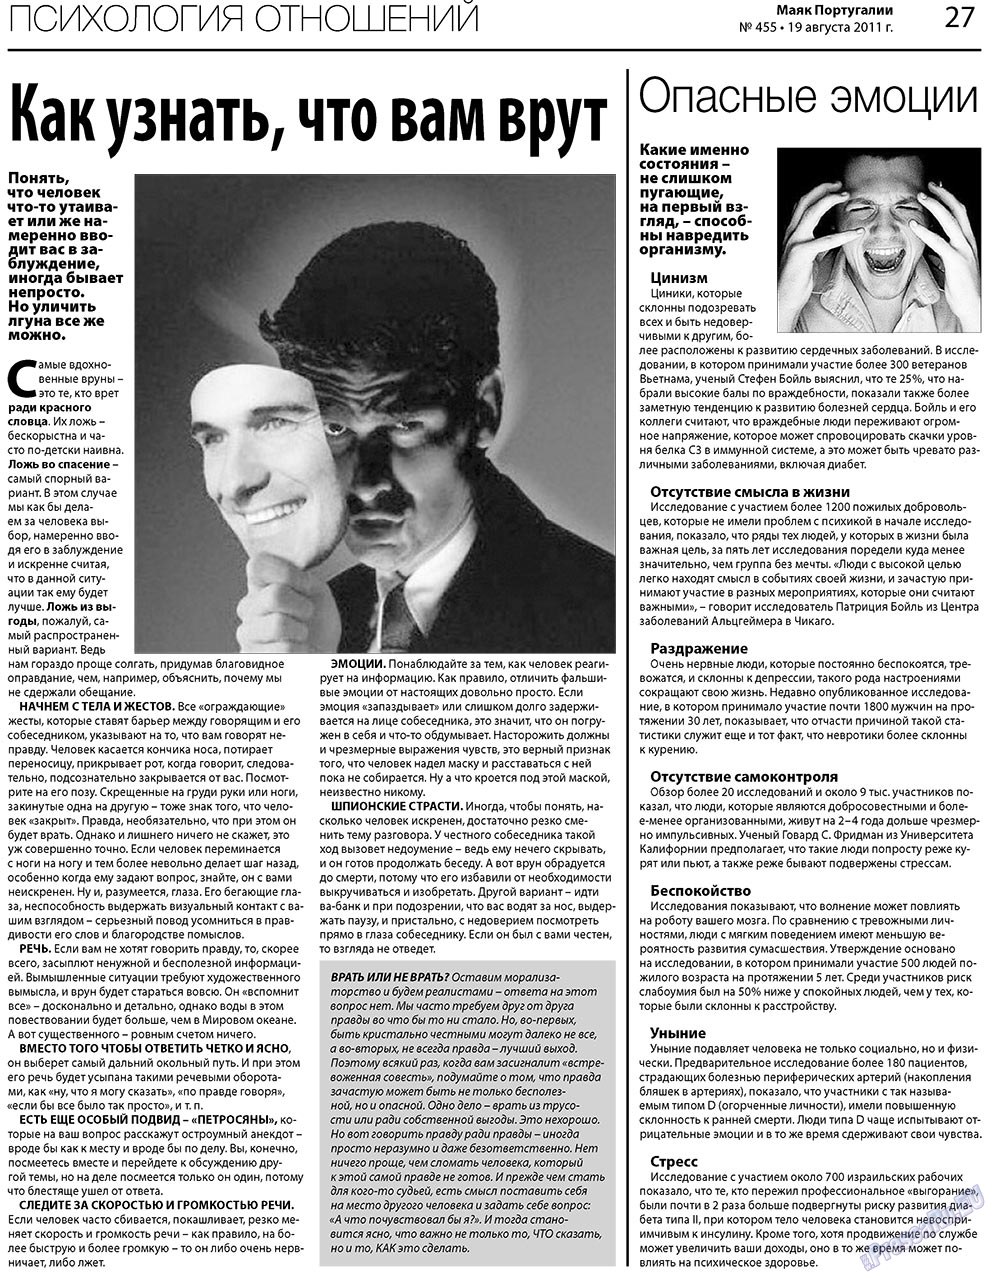 Маяк Португалии (газета). 2011 год, номер 455, стр. 27